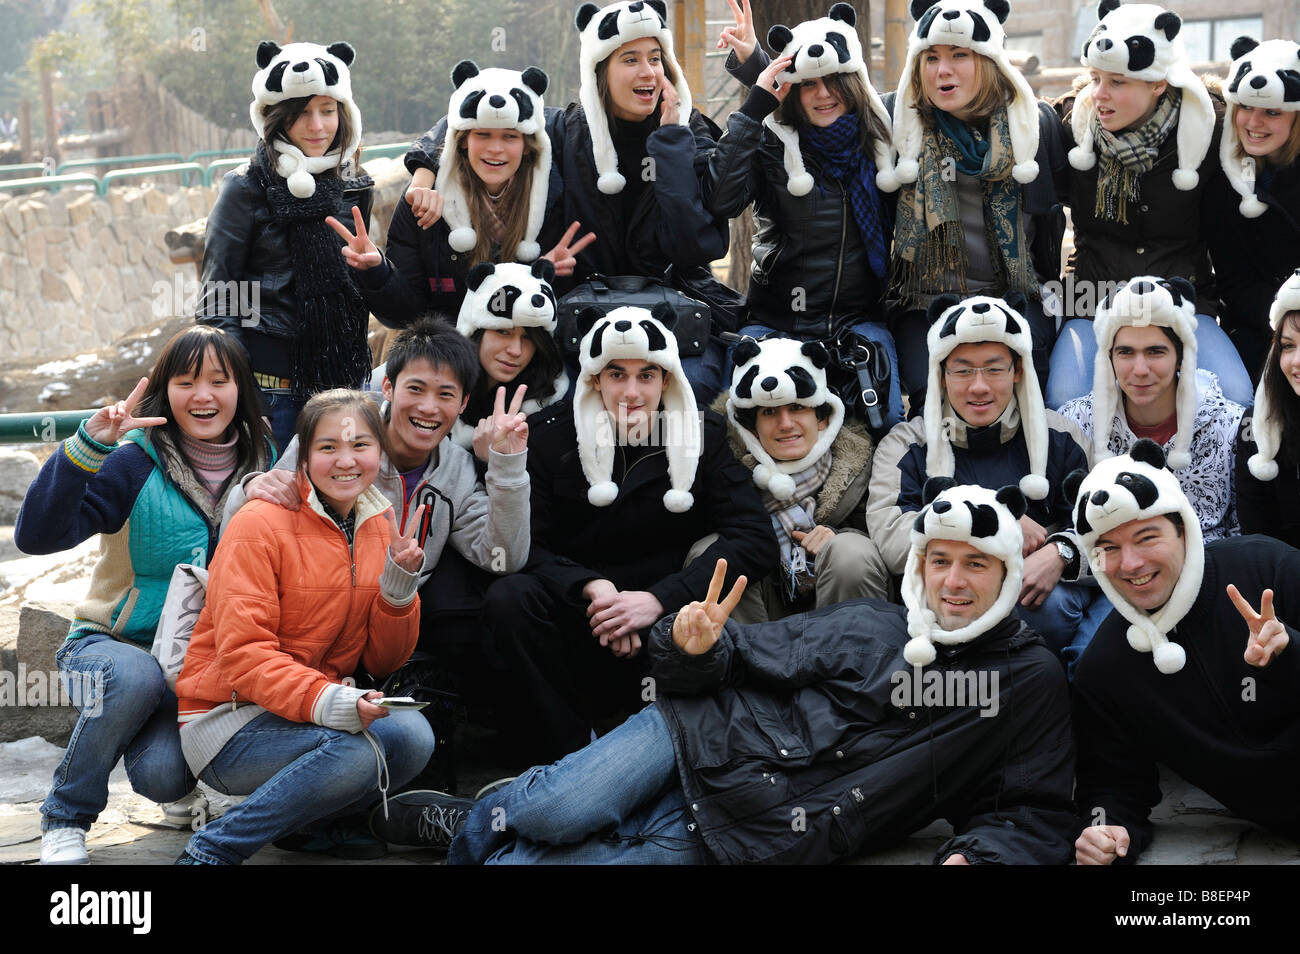 Le français au secondaire les élèves posent pour une photo avec trois touristes chinois au Zoo de Pékin. 21-Feb-2009 Banque D'Images